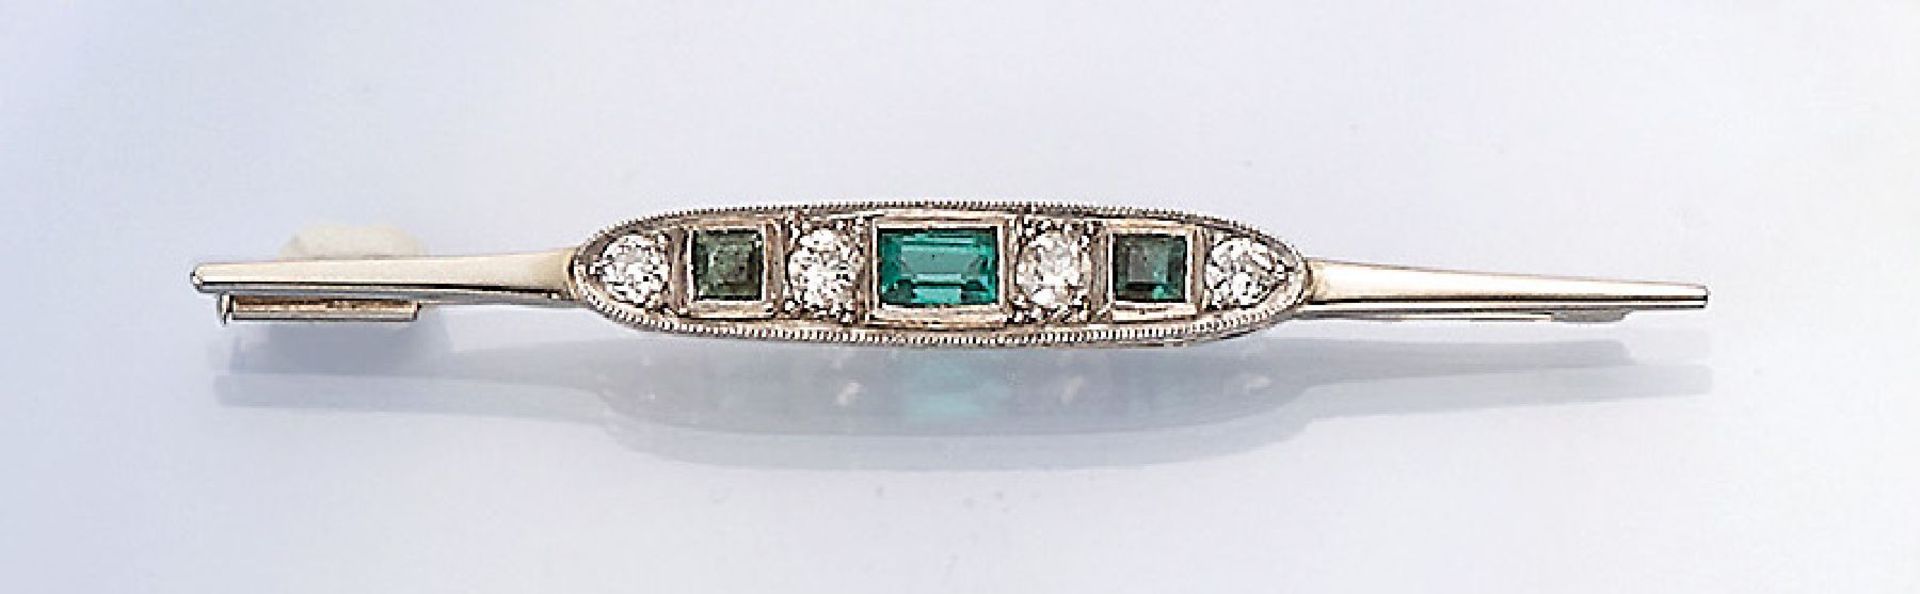 Art-Deco Brosche mit Smaragden und Diamanten, 1930er Jahre, Platin, 3 facett. Smaragde zus. ca. 0.25